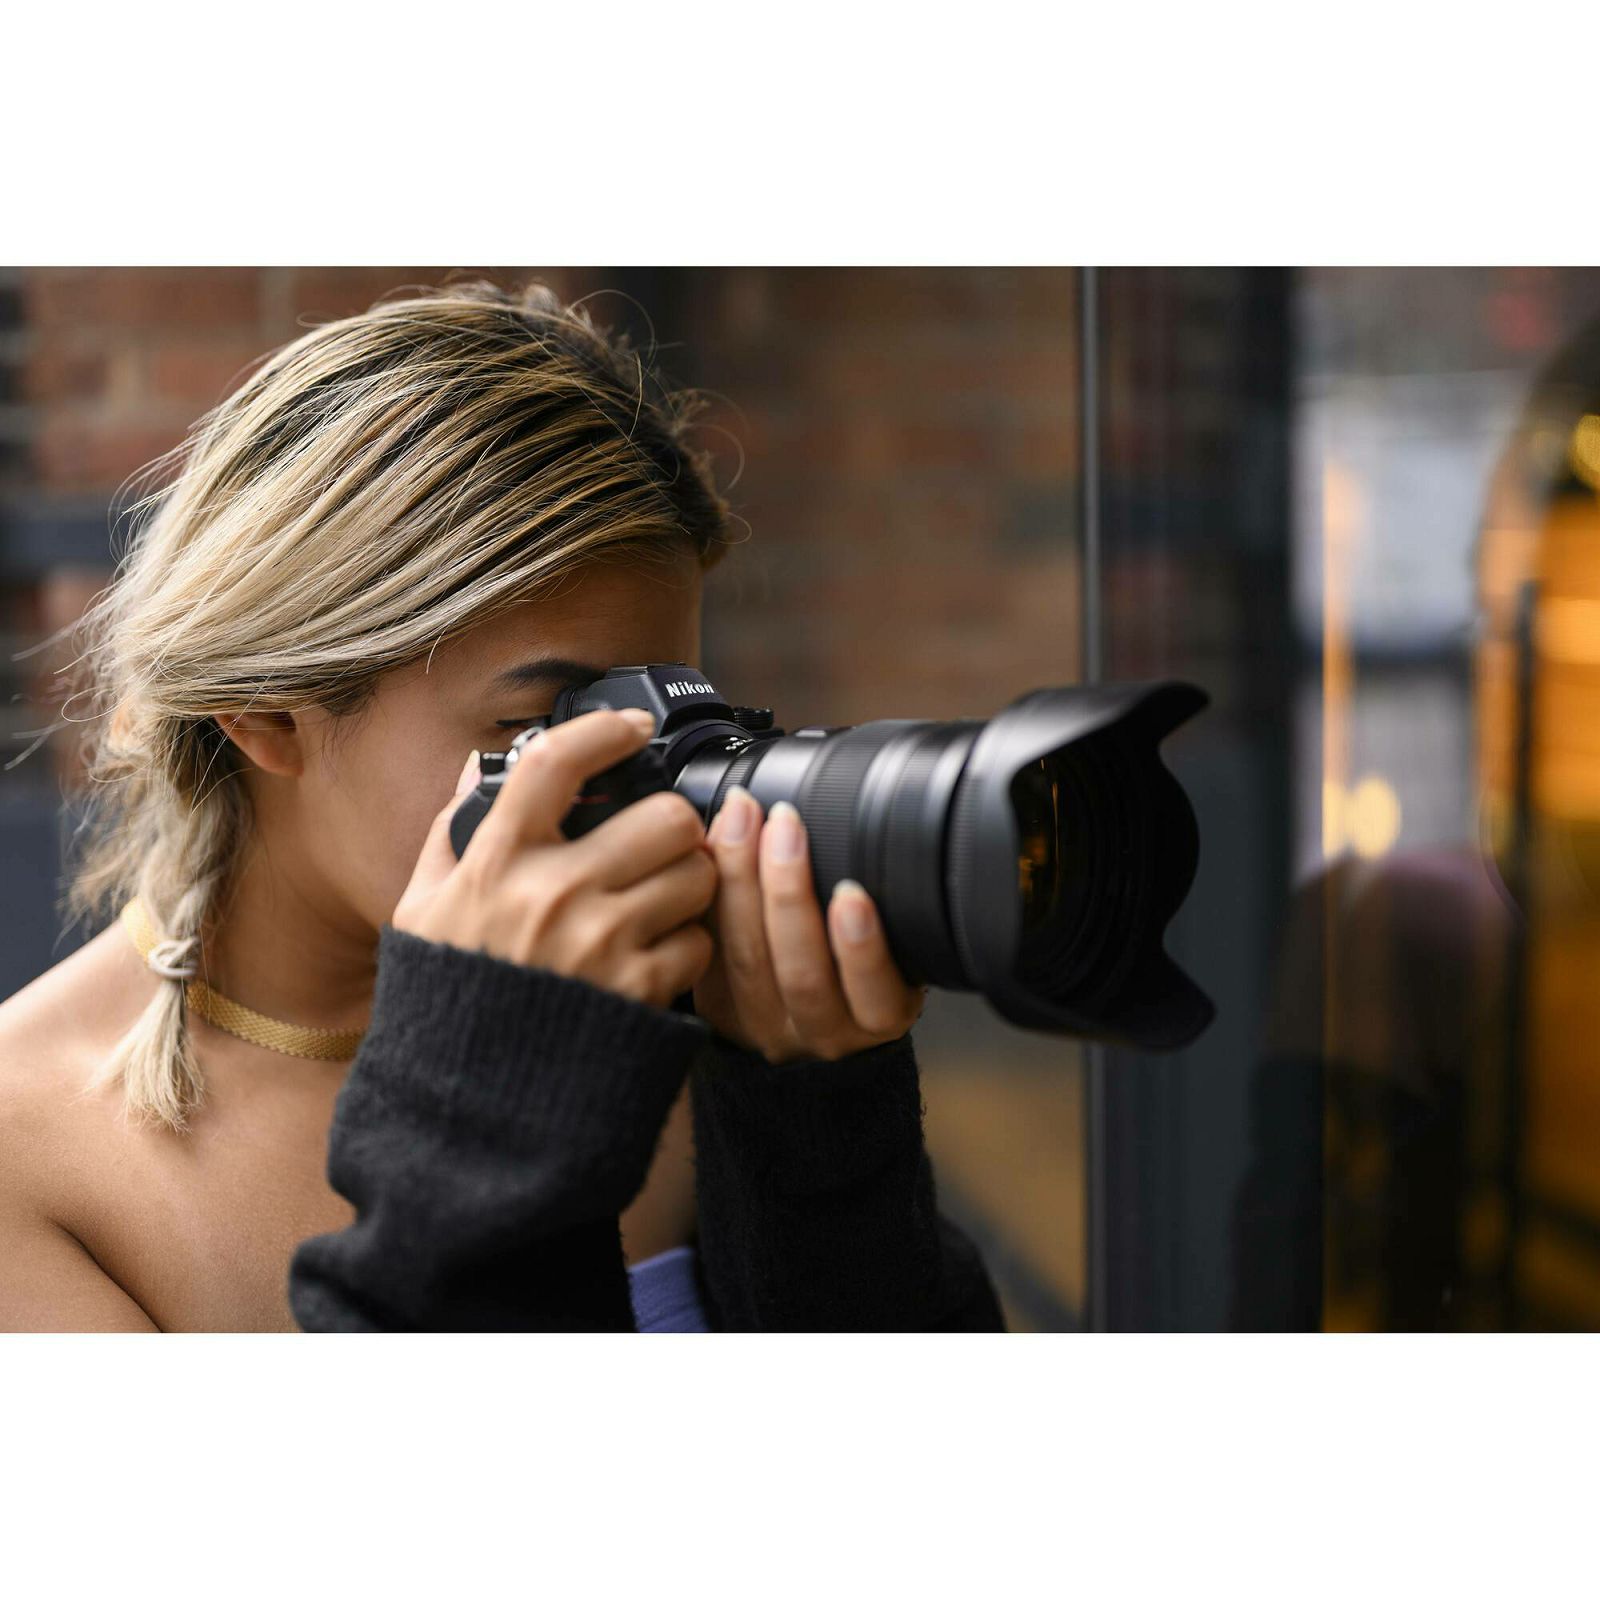 Nikon Z6 II Body + FTZ Adapter KIT Mirrorless Digital Camera bezrcalni digitalni fotoaparat tijelo s adapterom (VOA060K002) - LJETNA POMOCIJA